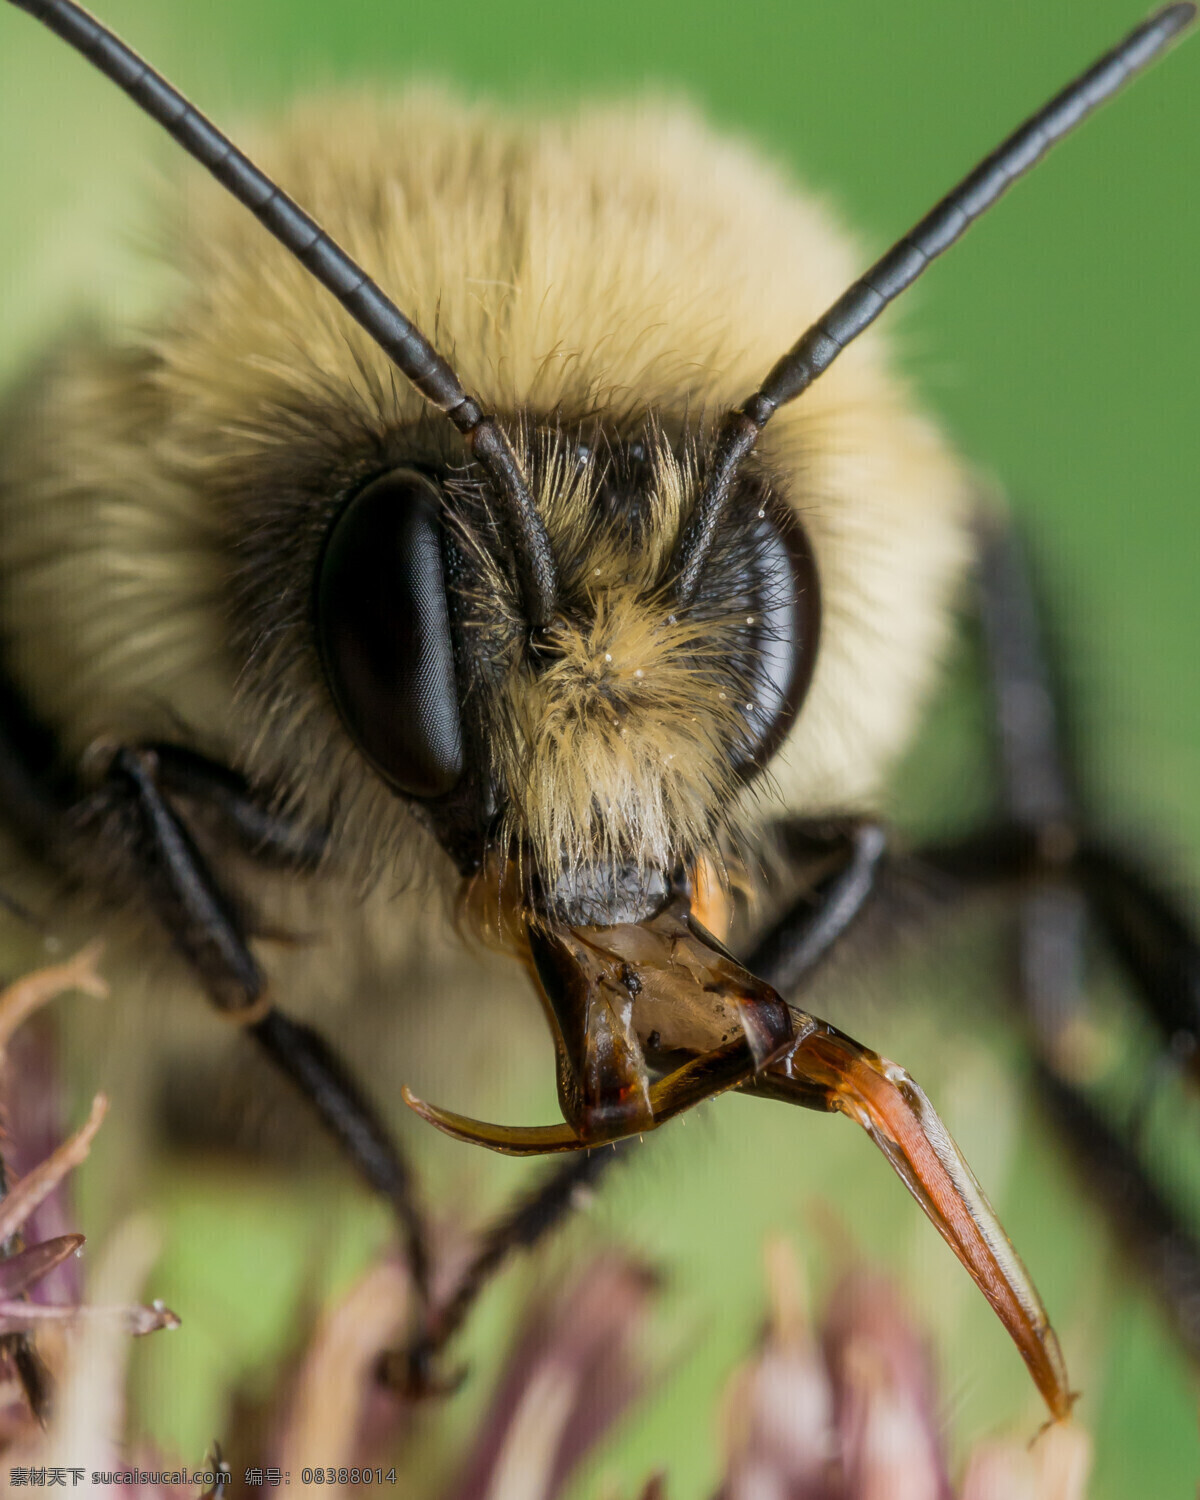 蜂巢 蜂群 蜂蜜 采蜜 小蜜蜂 动物 生物世界 昆虫